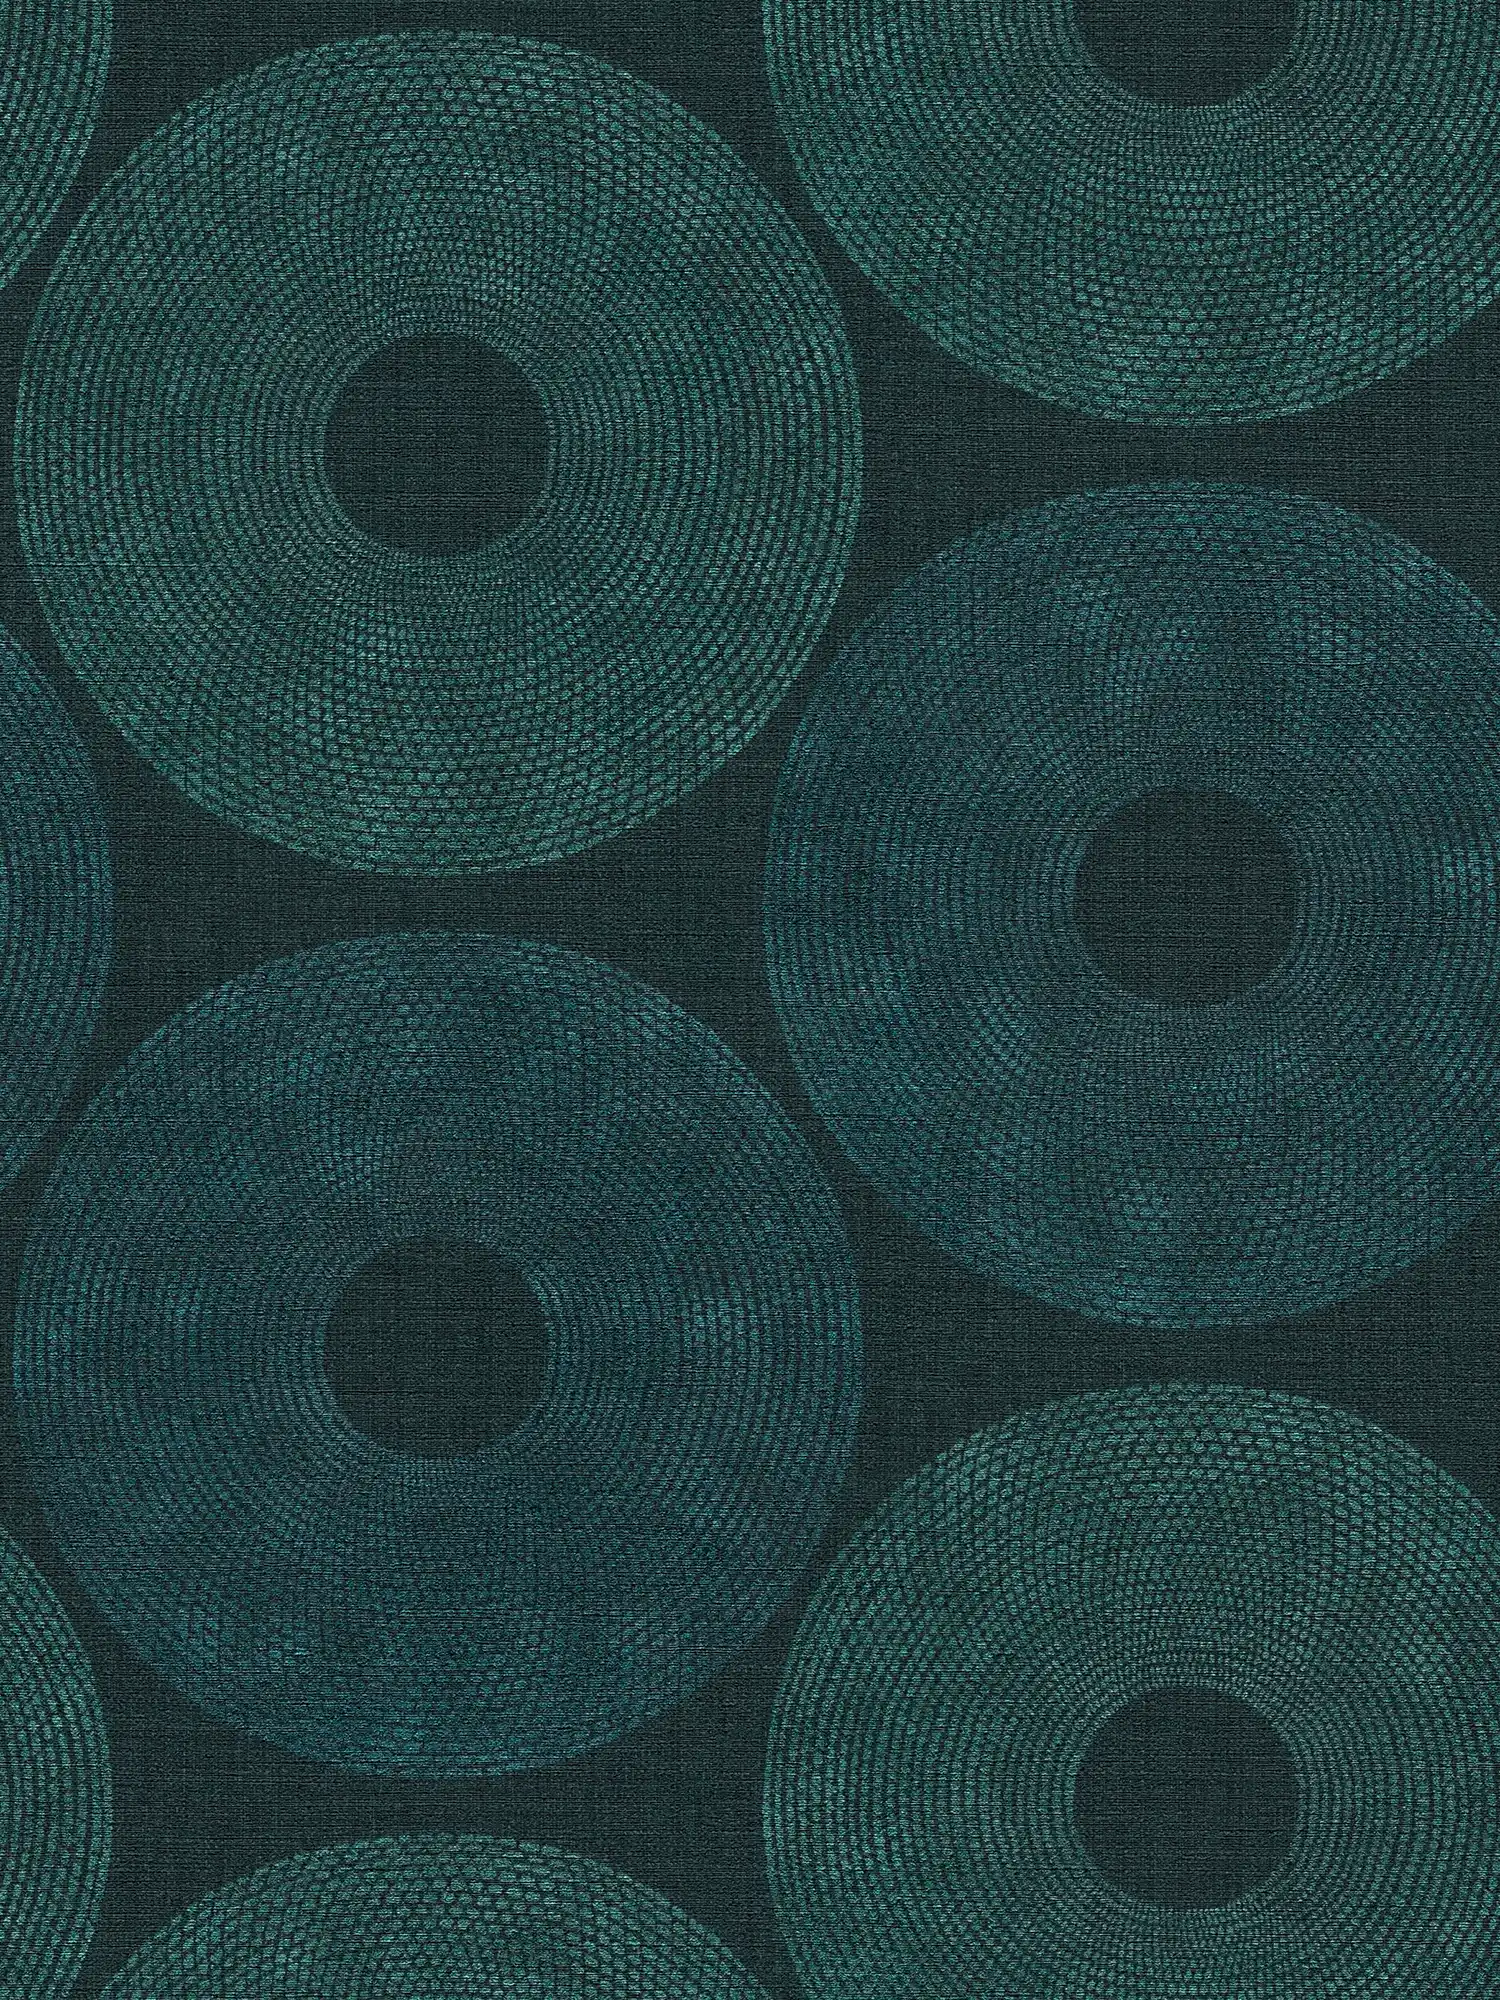 Papel pintado étnico círculos con diseño de estructura - verde, metálico
